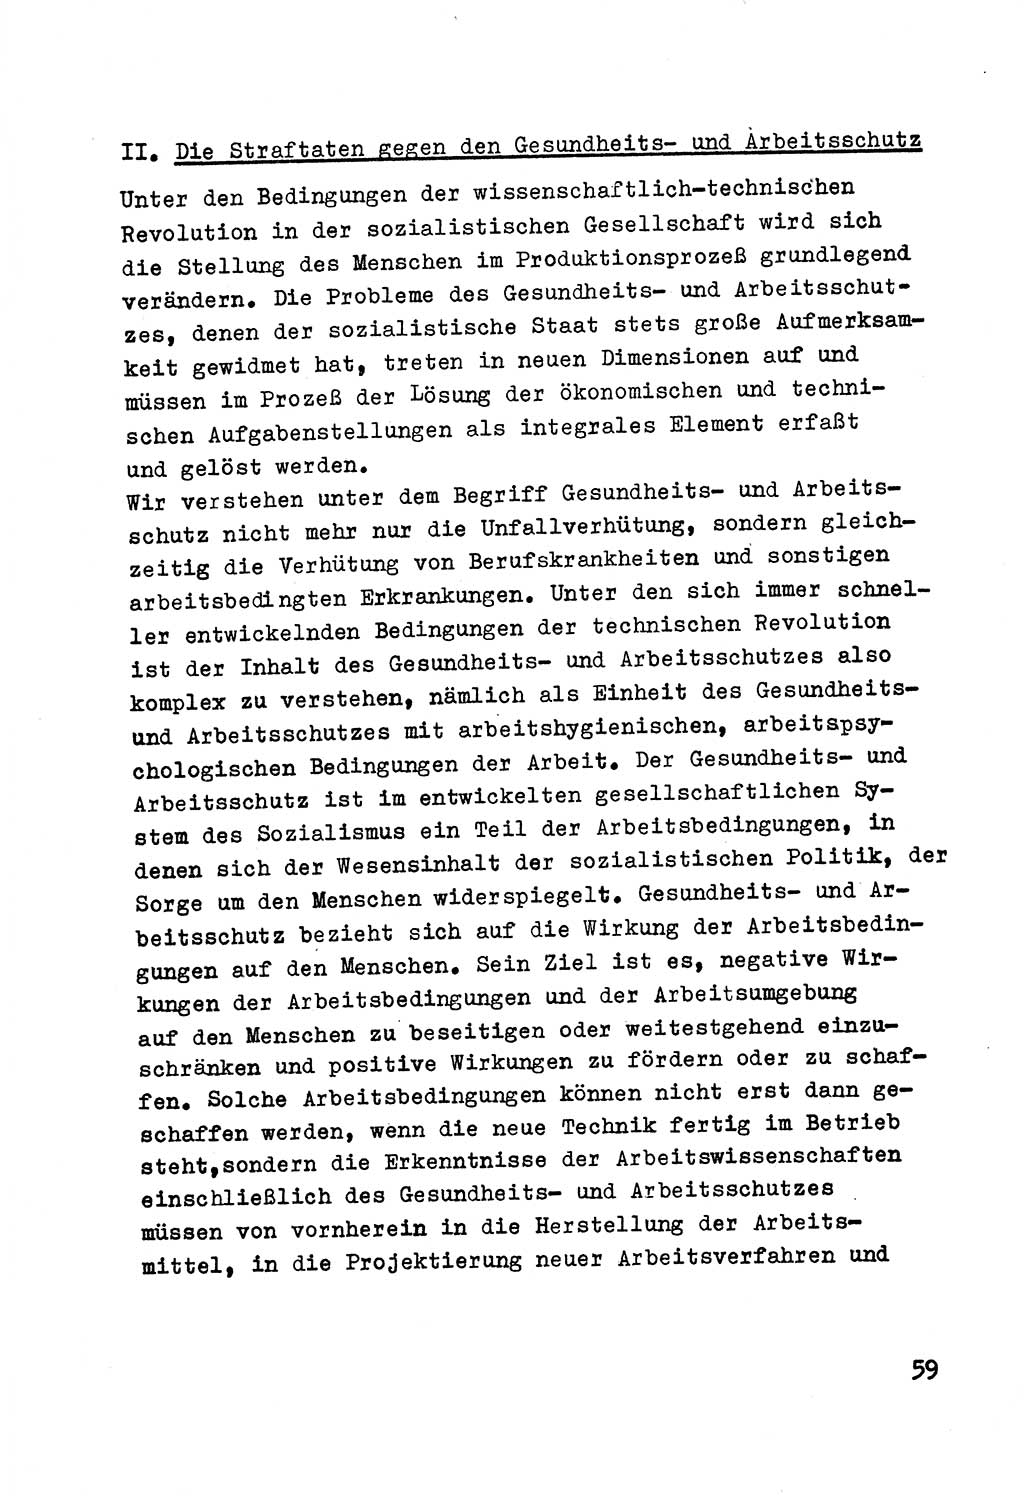 Strafrecht der DDR (Deutsche Demokratische Republik), Besonderer Teil, Lehrmaterial, Heft 7 1970, Seite 59 (Strafr. DDR BT Lehrmat. H. 7 1970, S. 59)